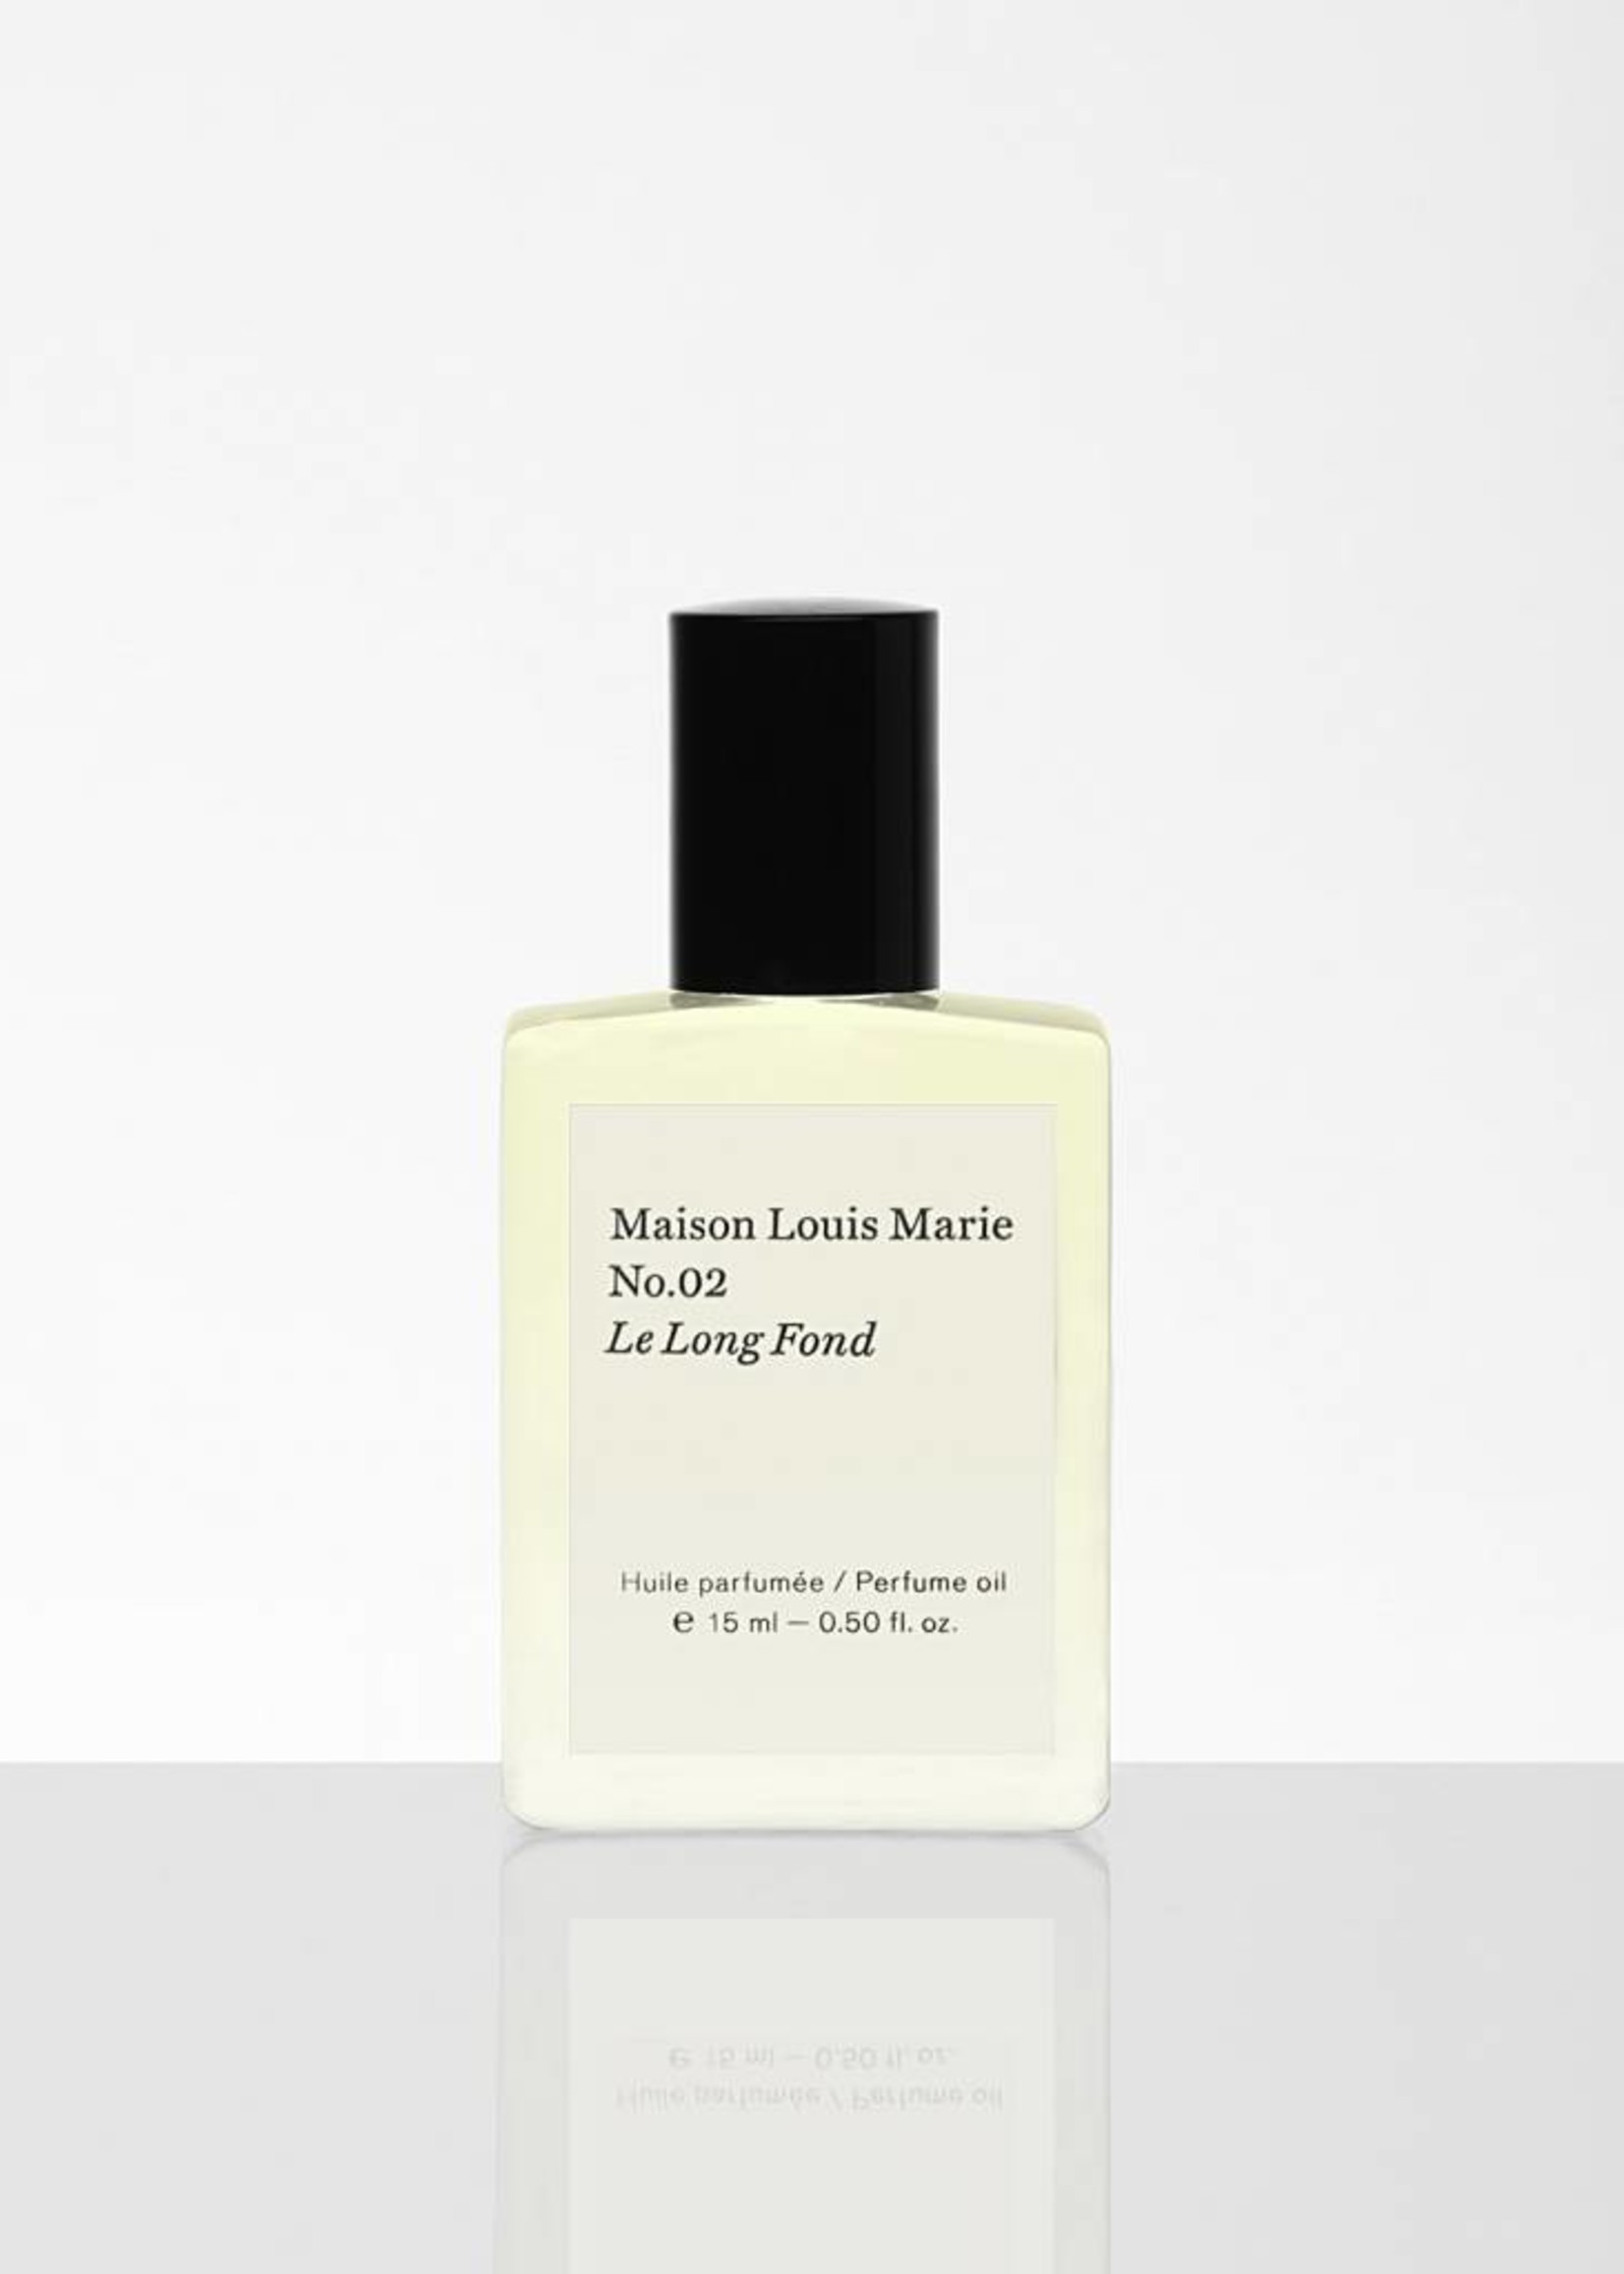 Maison Louis Marie Maison Louis Marie No.02 Le Long Fond Perfume Oil